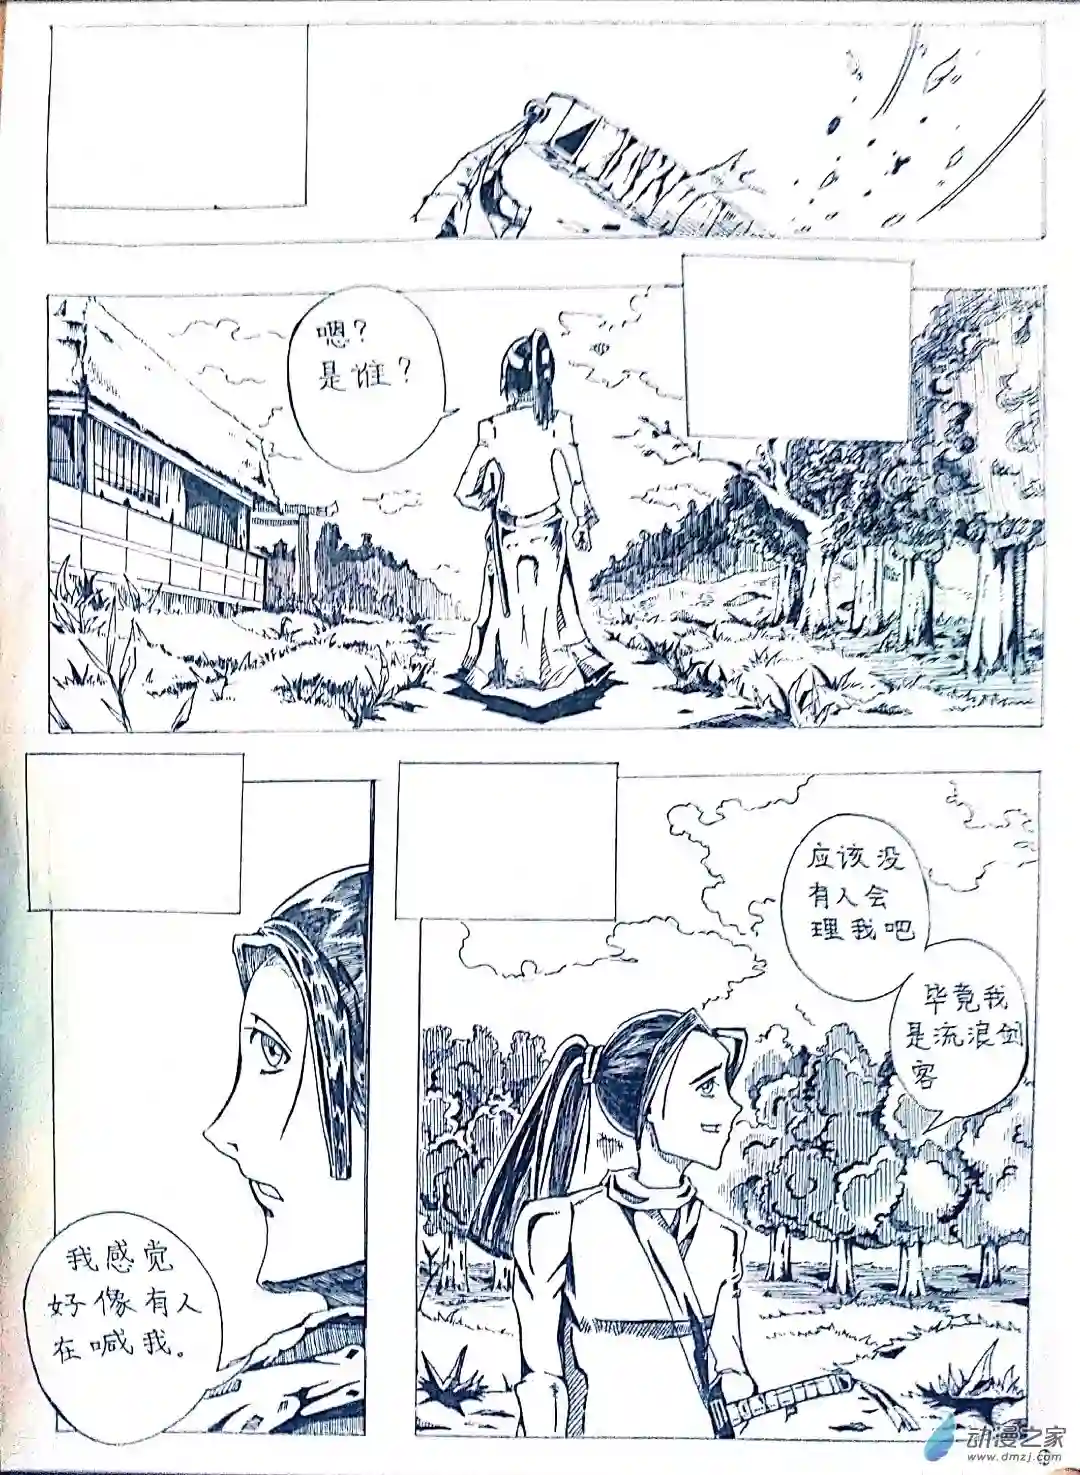 日刊漫画19 剑客的故事(大长篇)